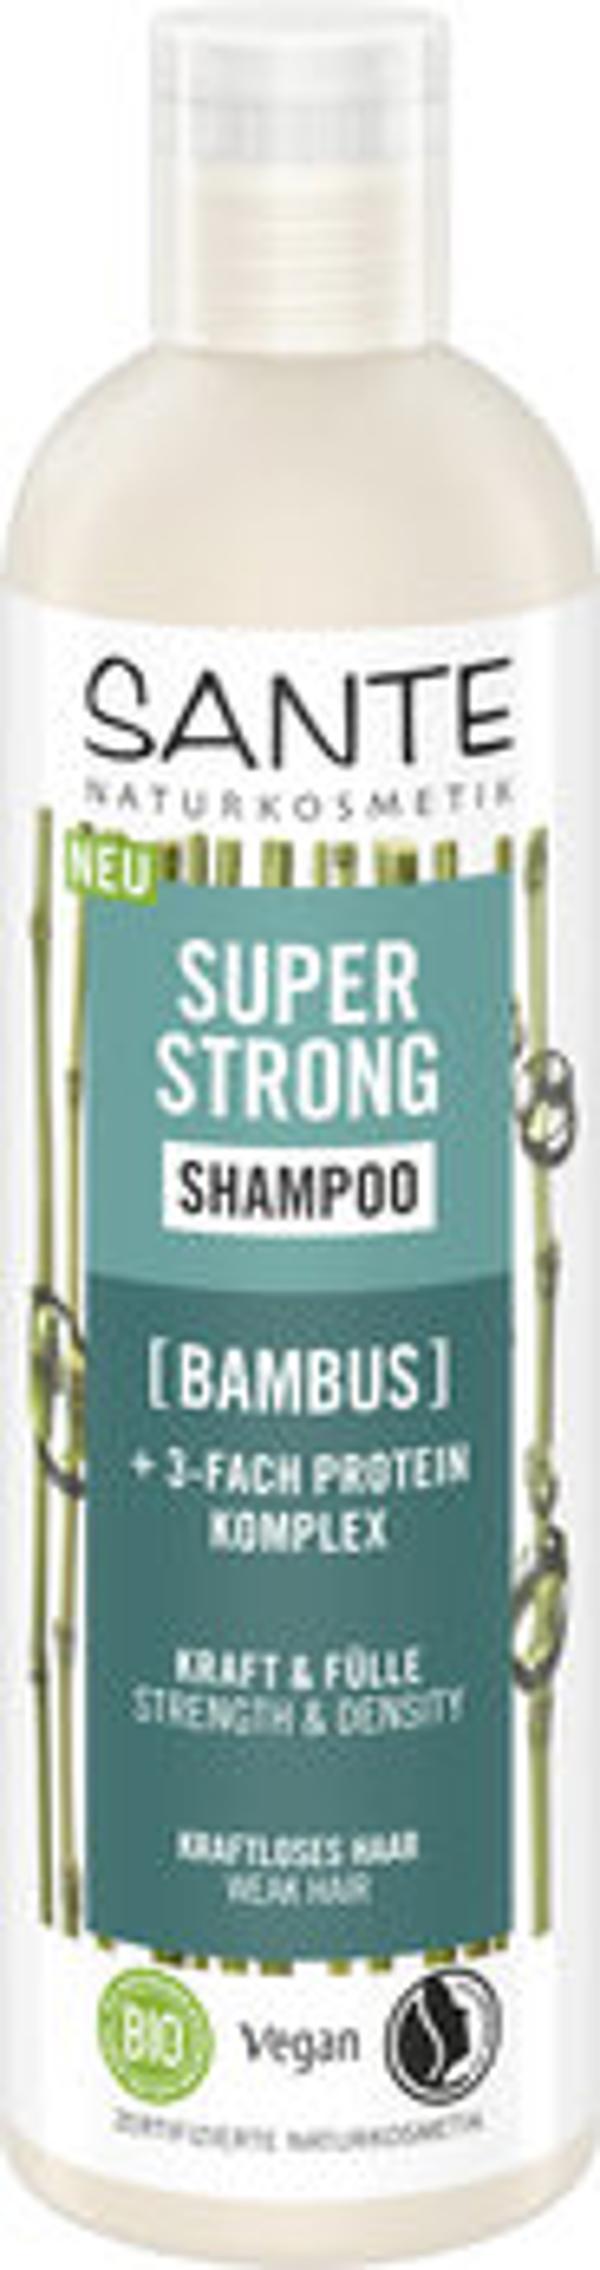 Produktfoto zu Super Strong Shampoo Bambus 250ml